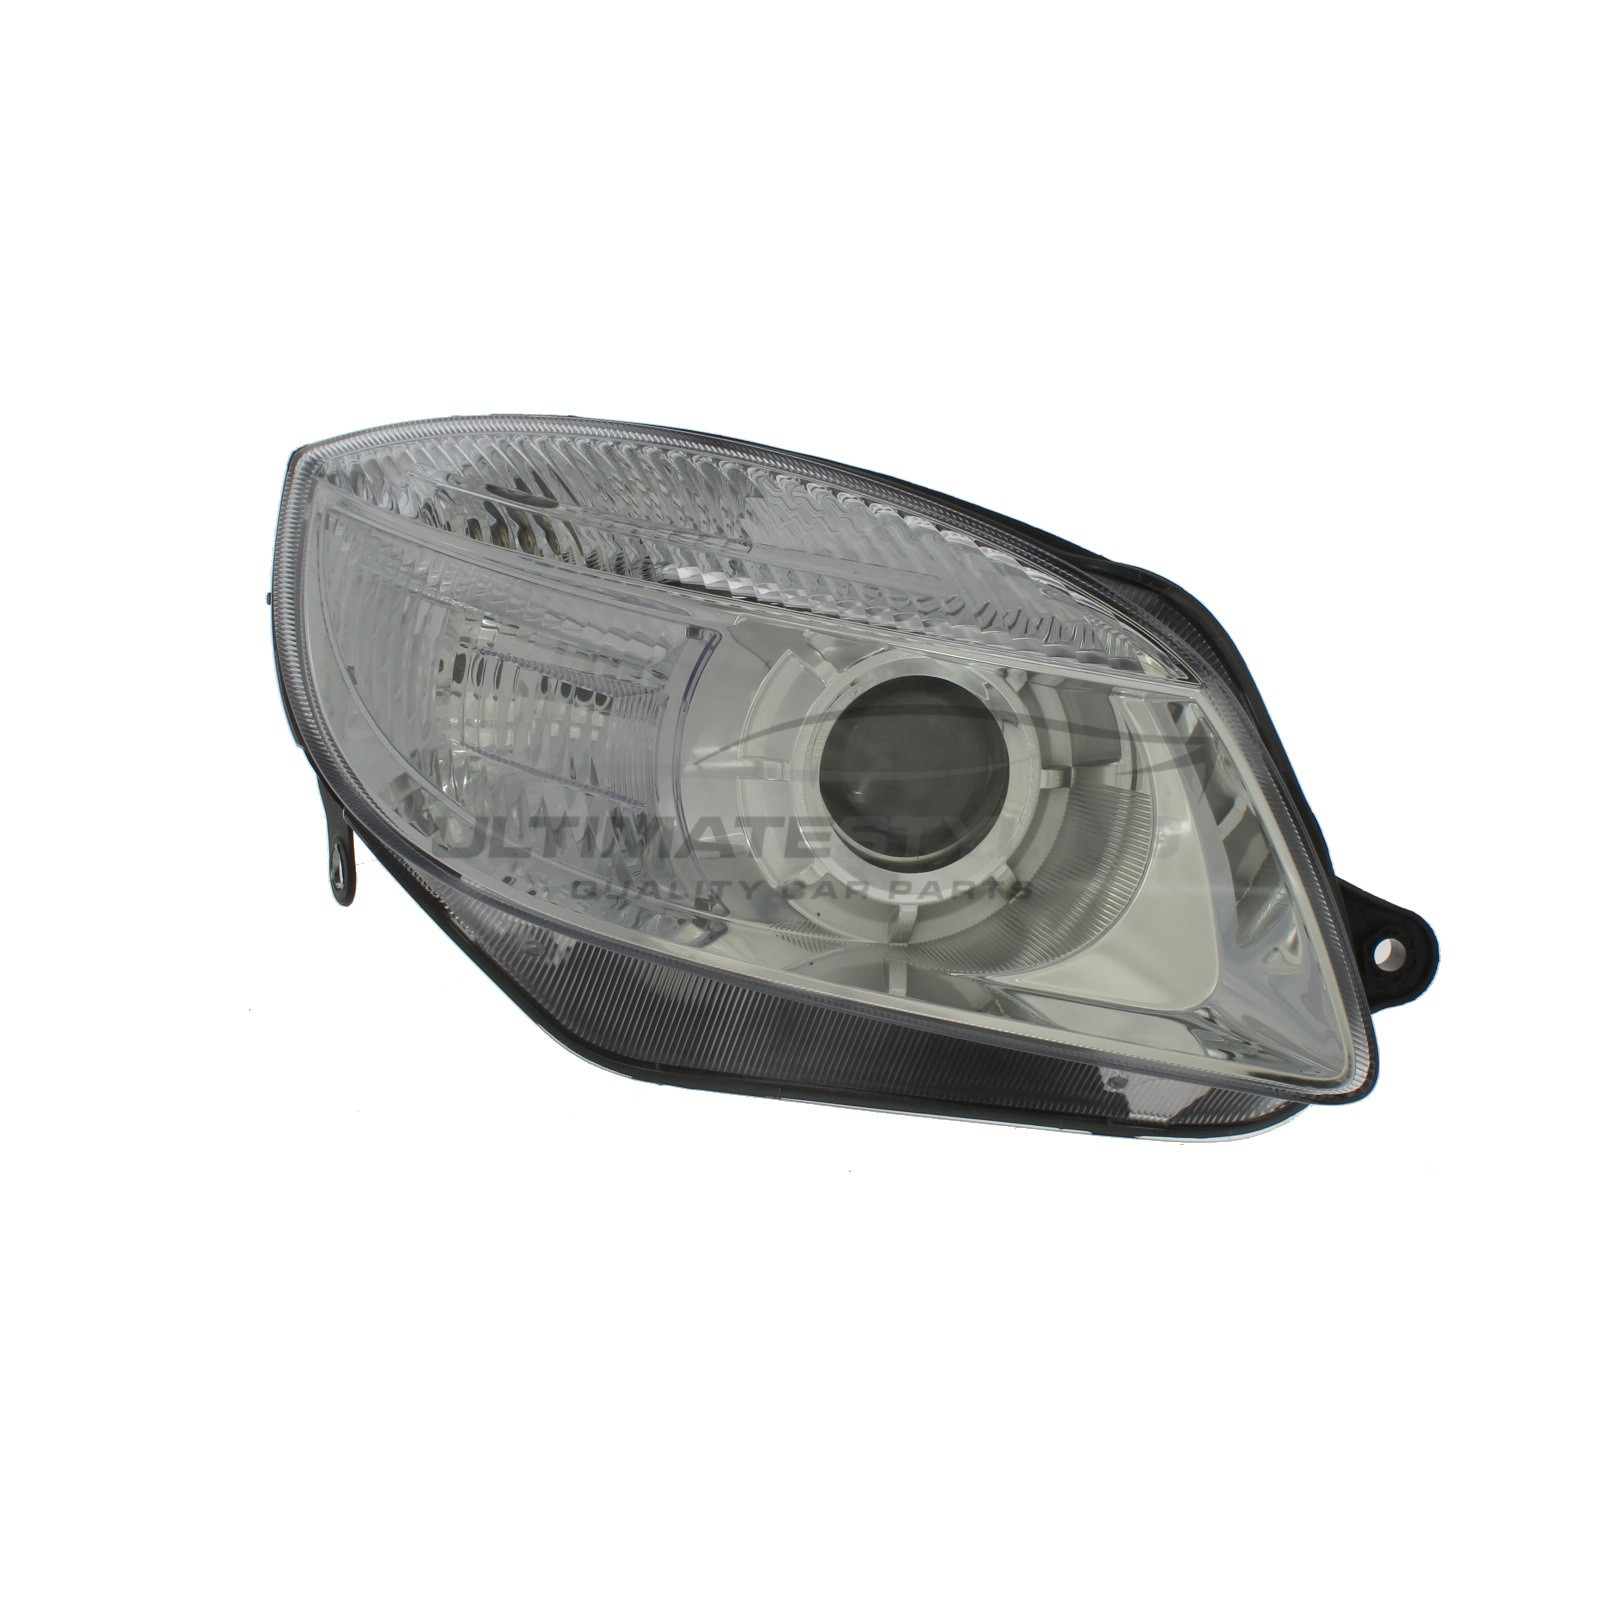 Headlight / Headlamp for Skoda Roomster